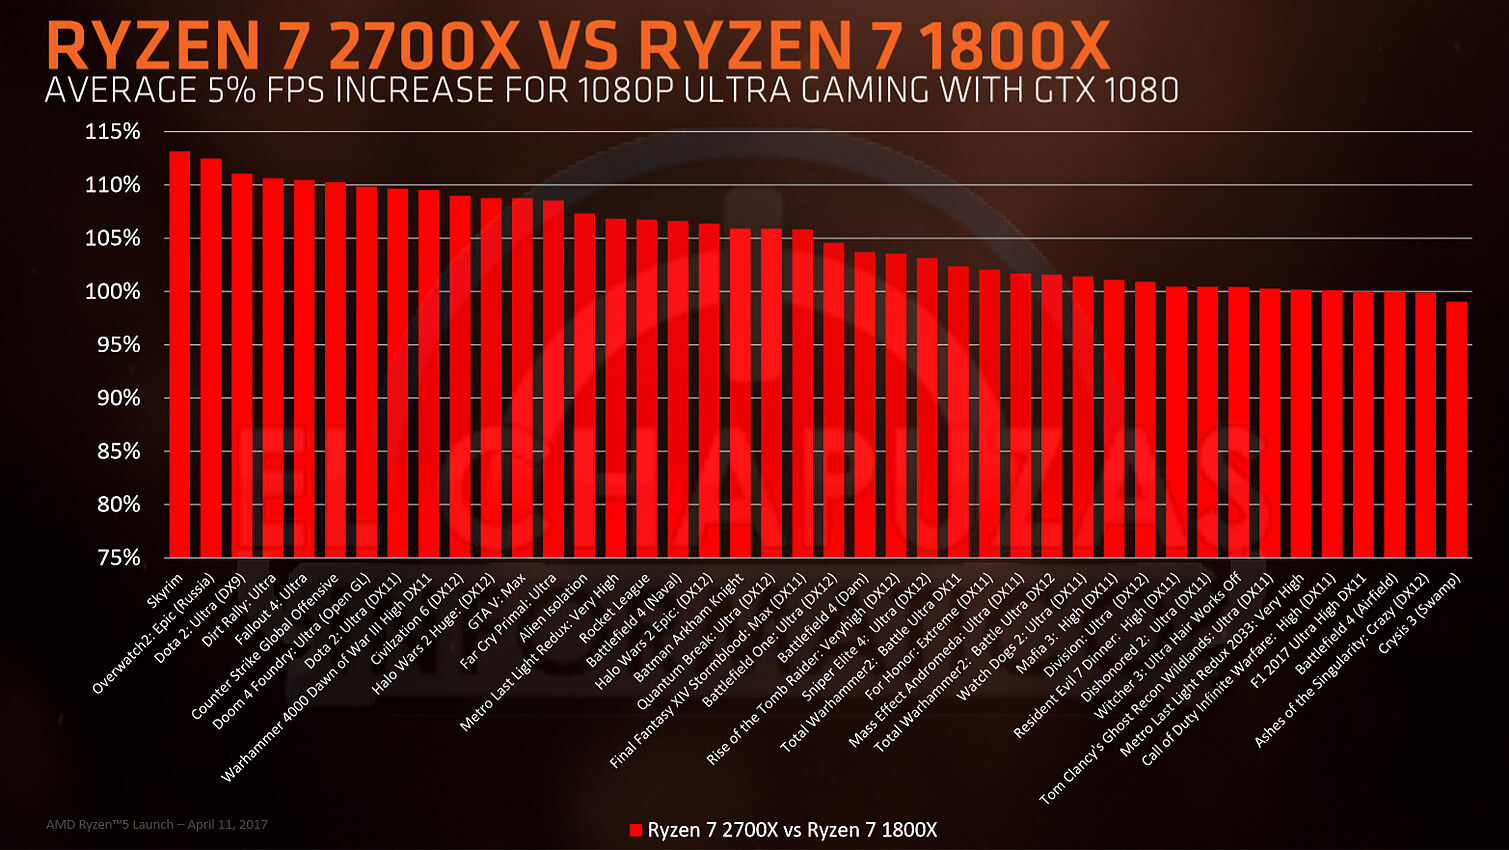 Processeur AMD Ryzen+